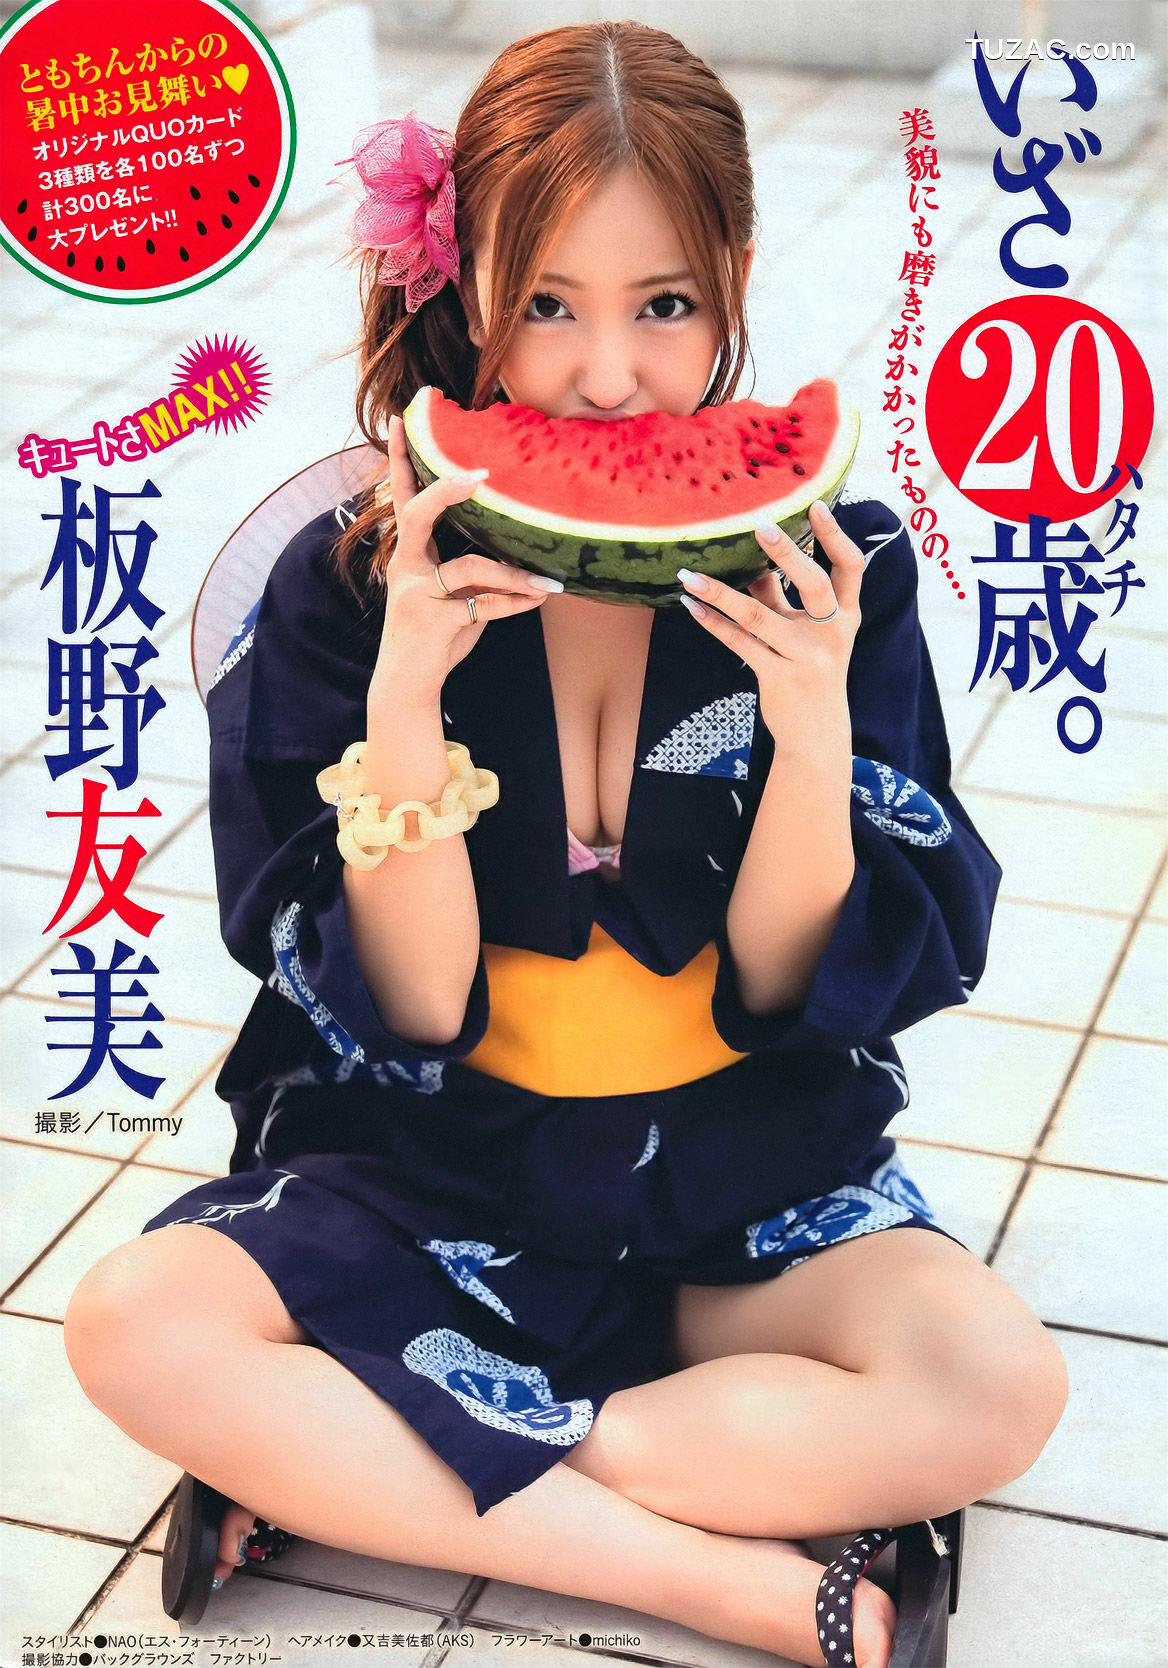 Young Magazine杂志写真_ 板野友美 Tomomi Itano 2011年No.36-37 写真杂志[19P]